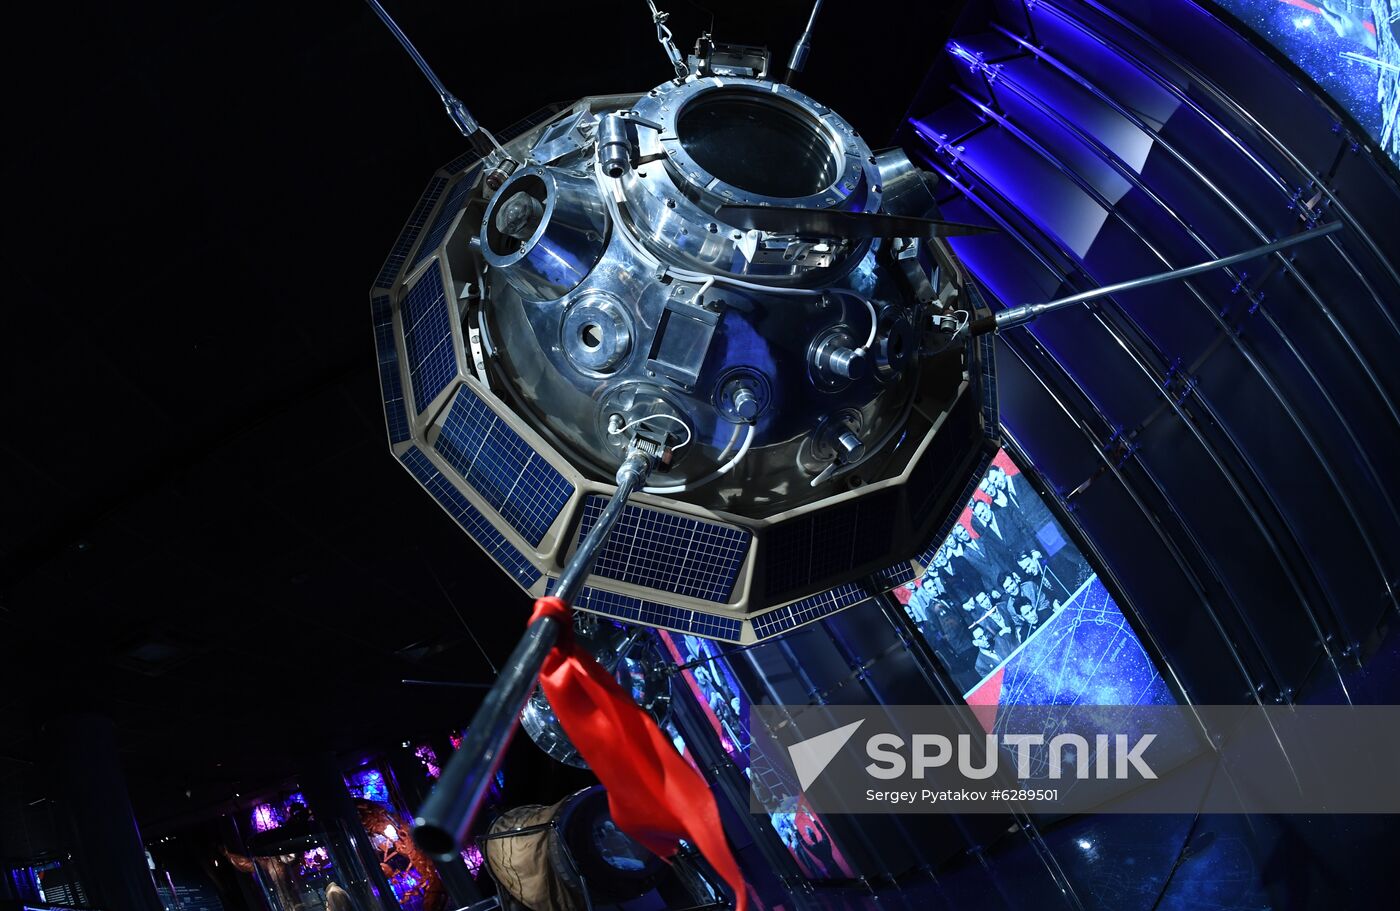 Russia Soyuz-Apollo Anniversary